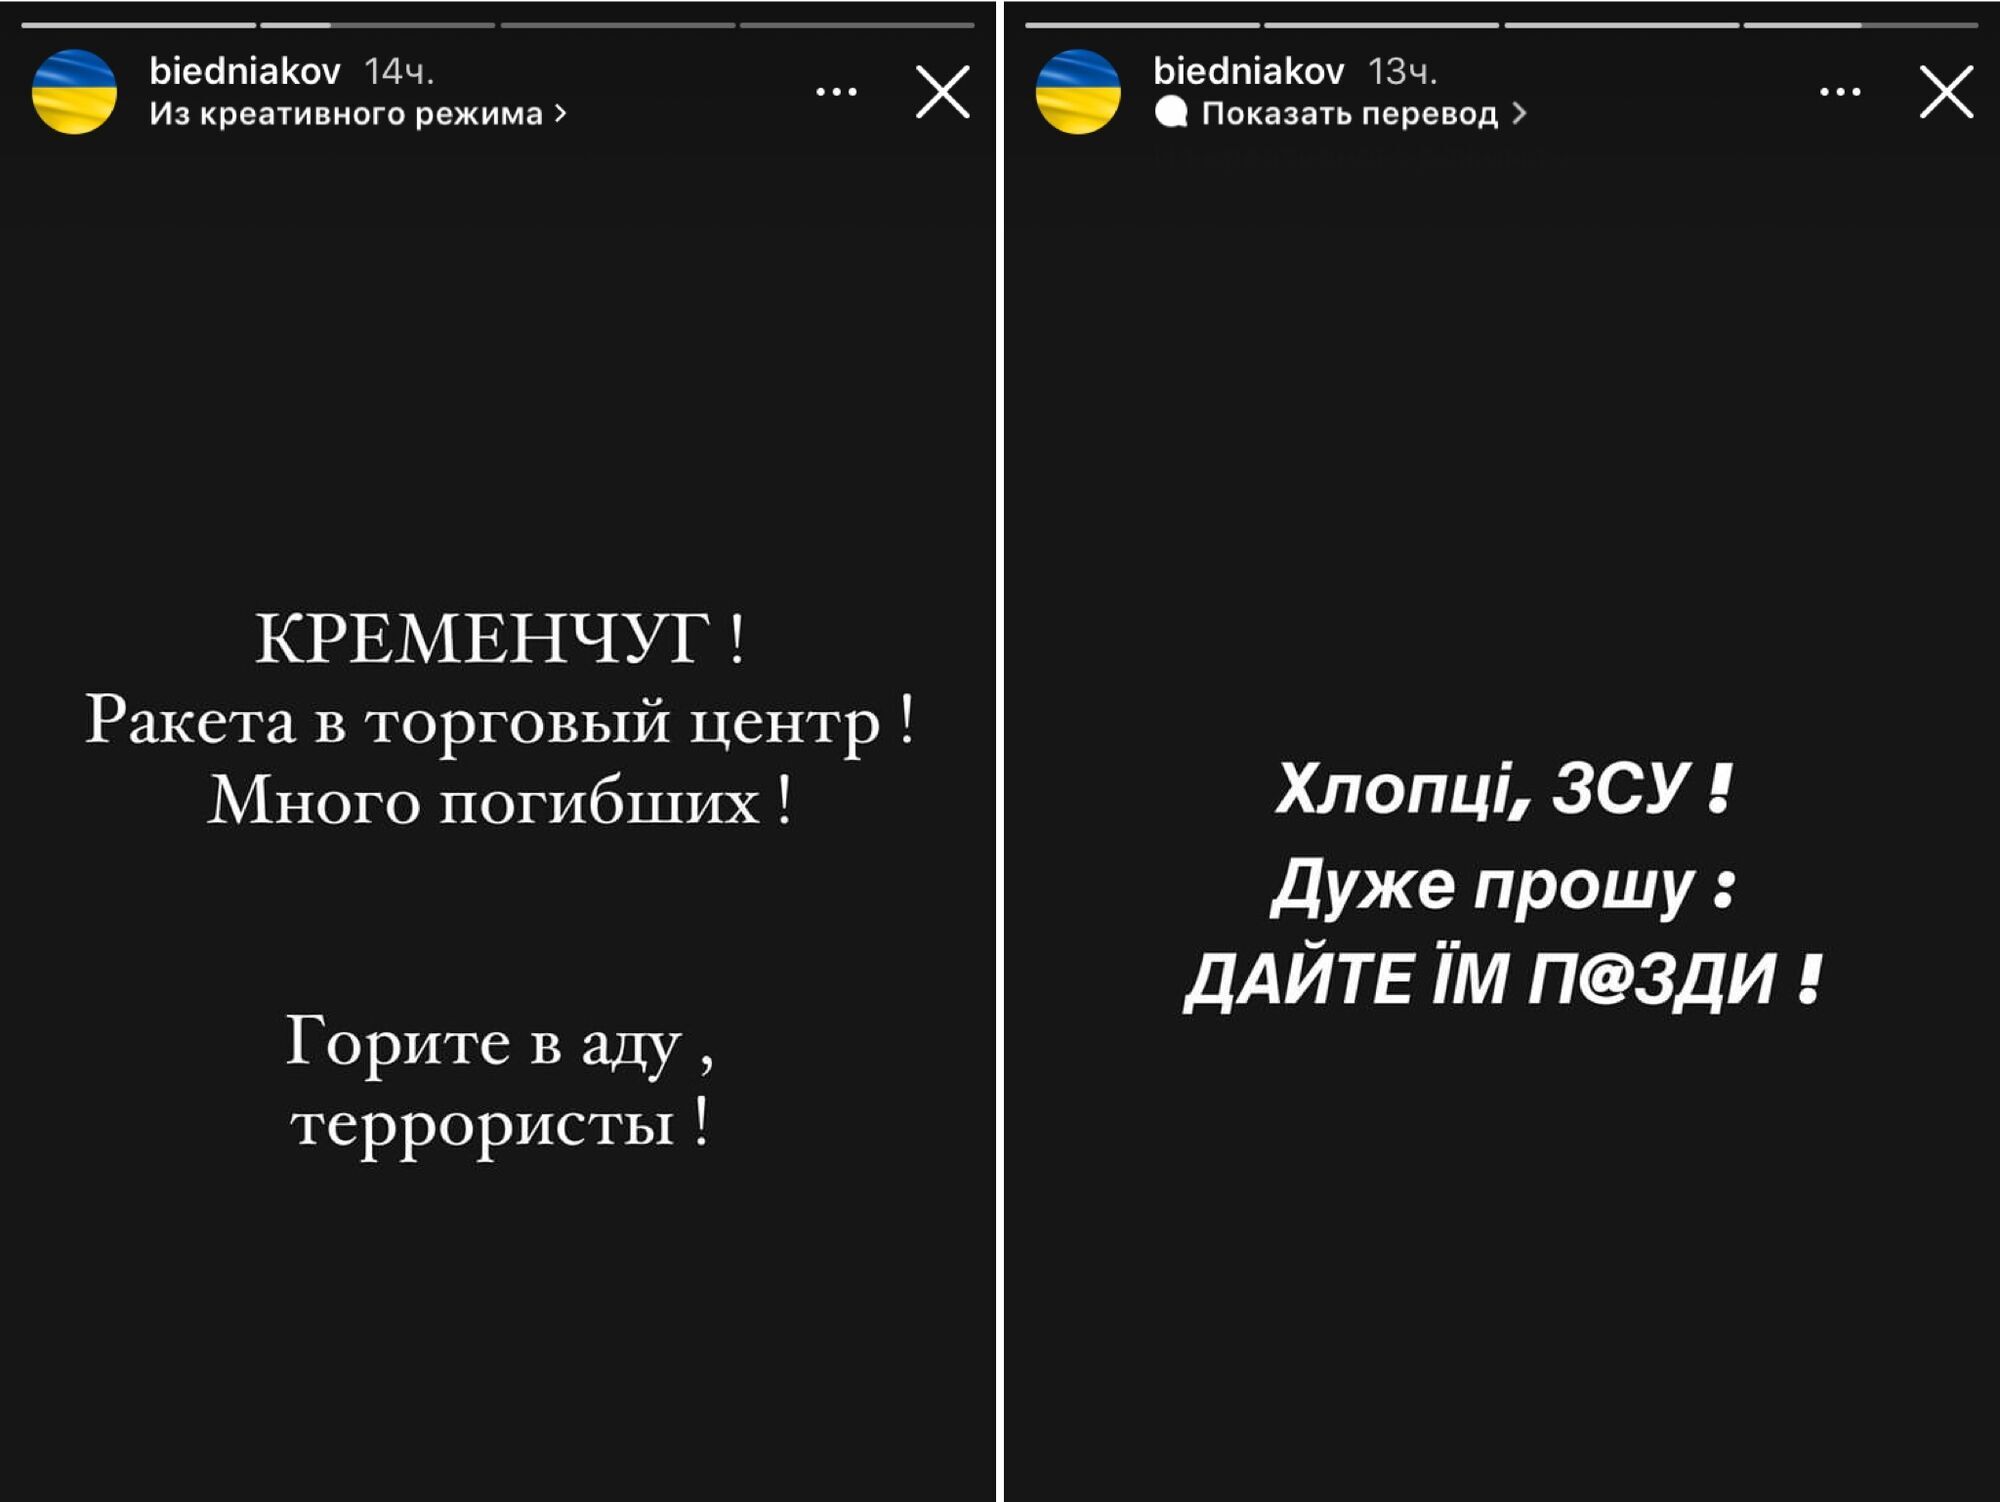 Ротару, Осадча, Бєдняков та інші зірки жорстко відреагували на обстріл ТЦ у Кременчуку: не пробачимо ніколи